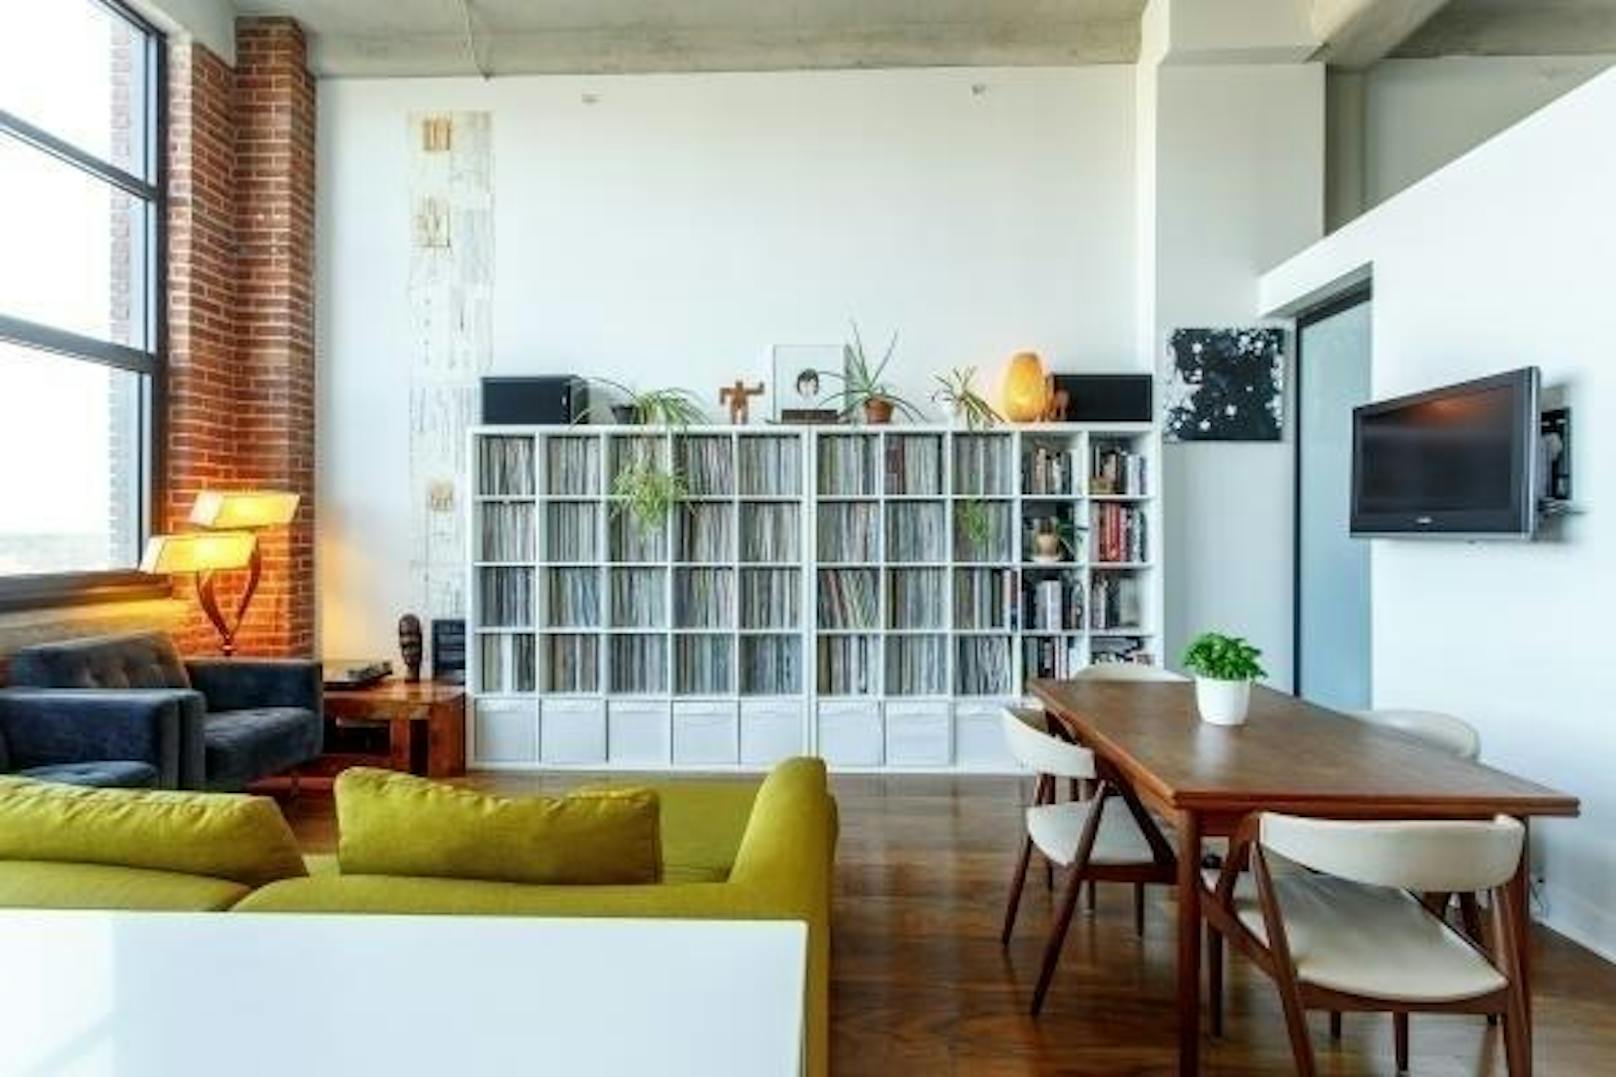 Ein Sofa kann auch mitten im Raum stehen oder mit etwas Abstand vor einem Bücherregal. So wirkt es sehr einladend und kommt auch besser zur Geltung, als wenn man es an die Wand rückt.